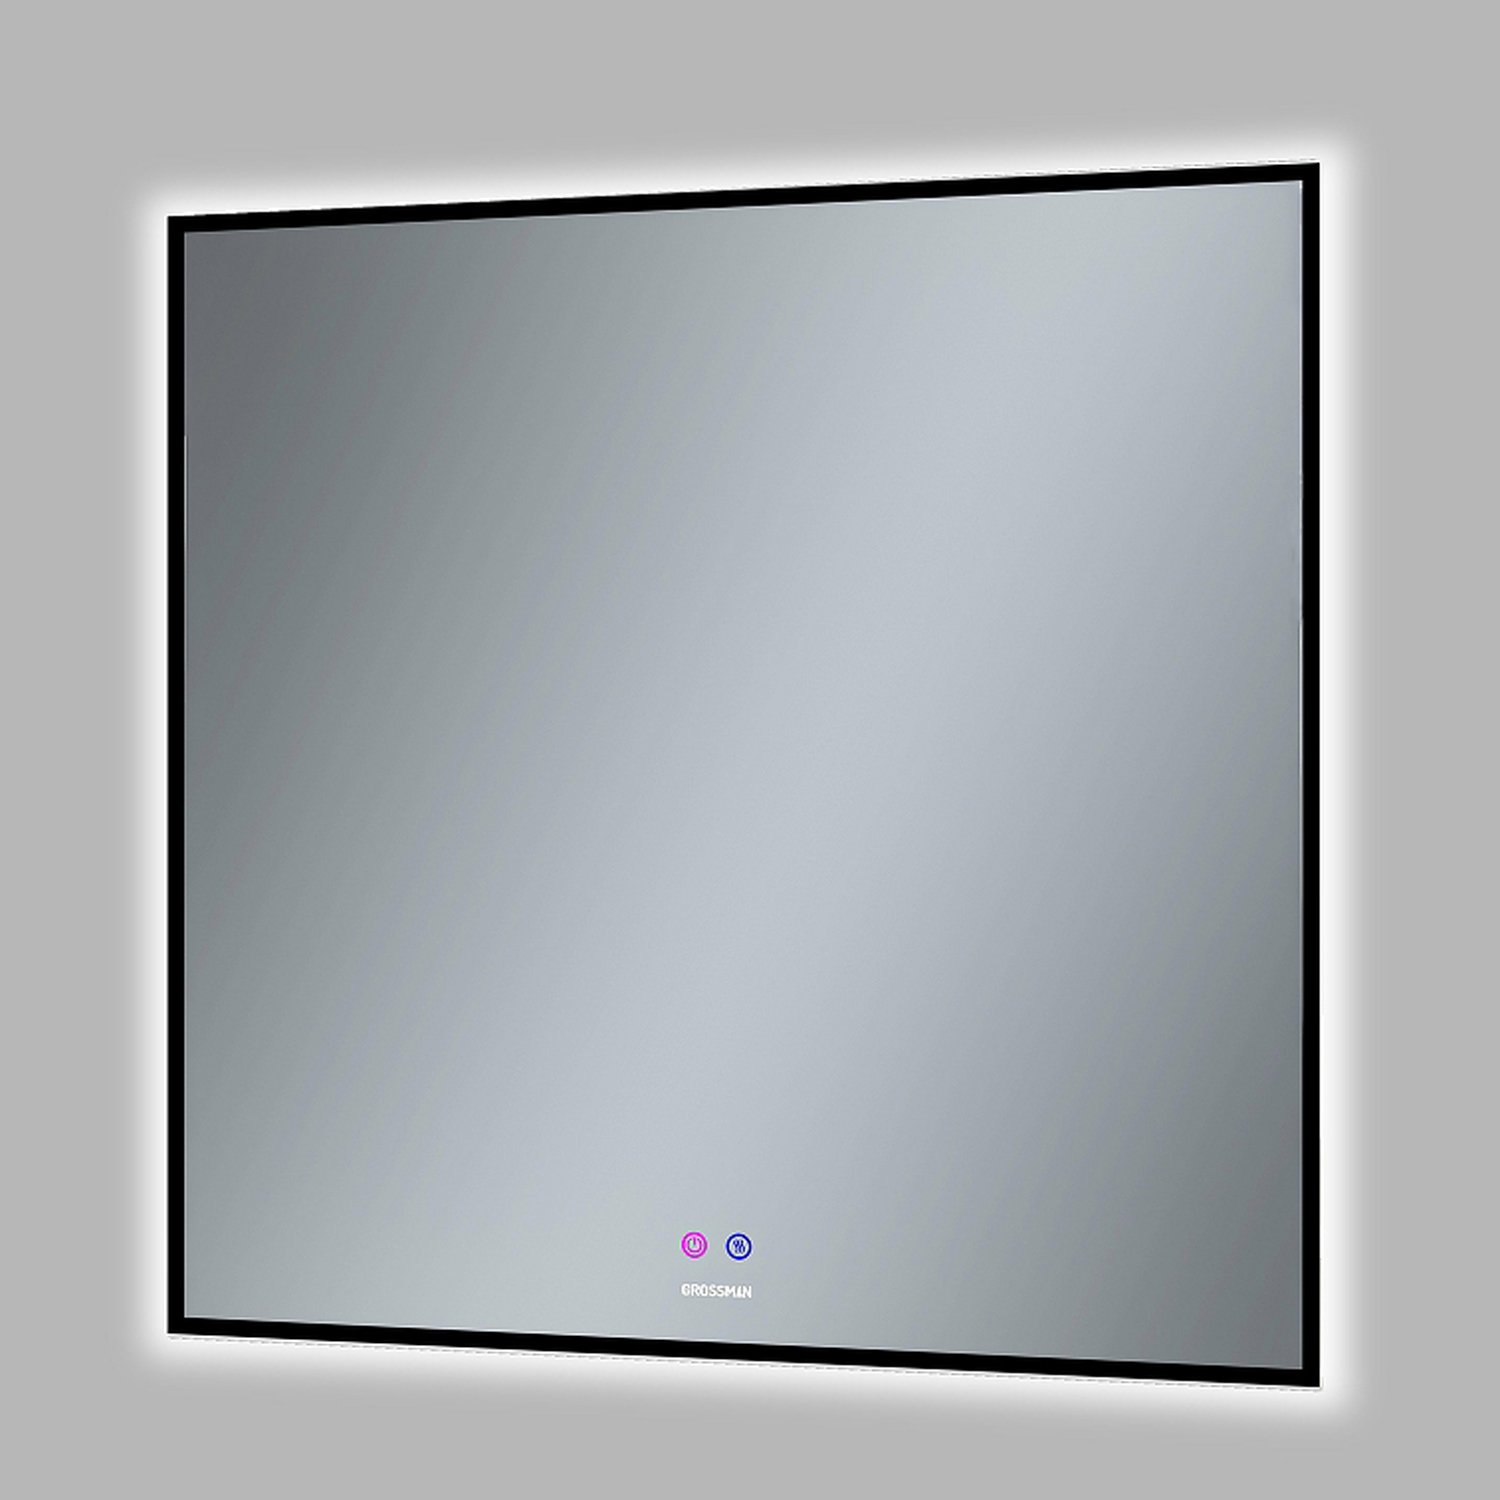 Зеркало Grossman Pragma Norma Black 80x80, с подсветкой, диммером и функцией антизапотевания, цвет черный - фото 1